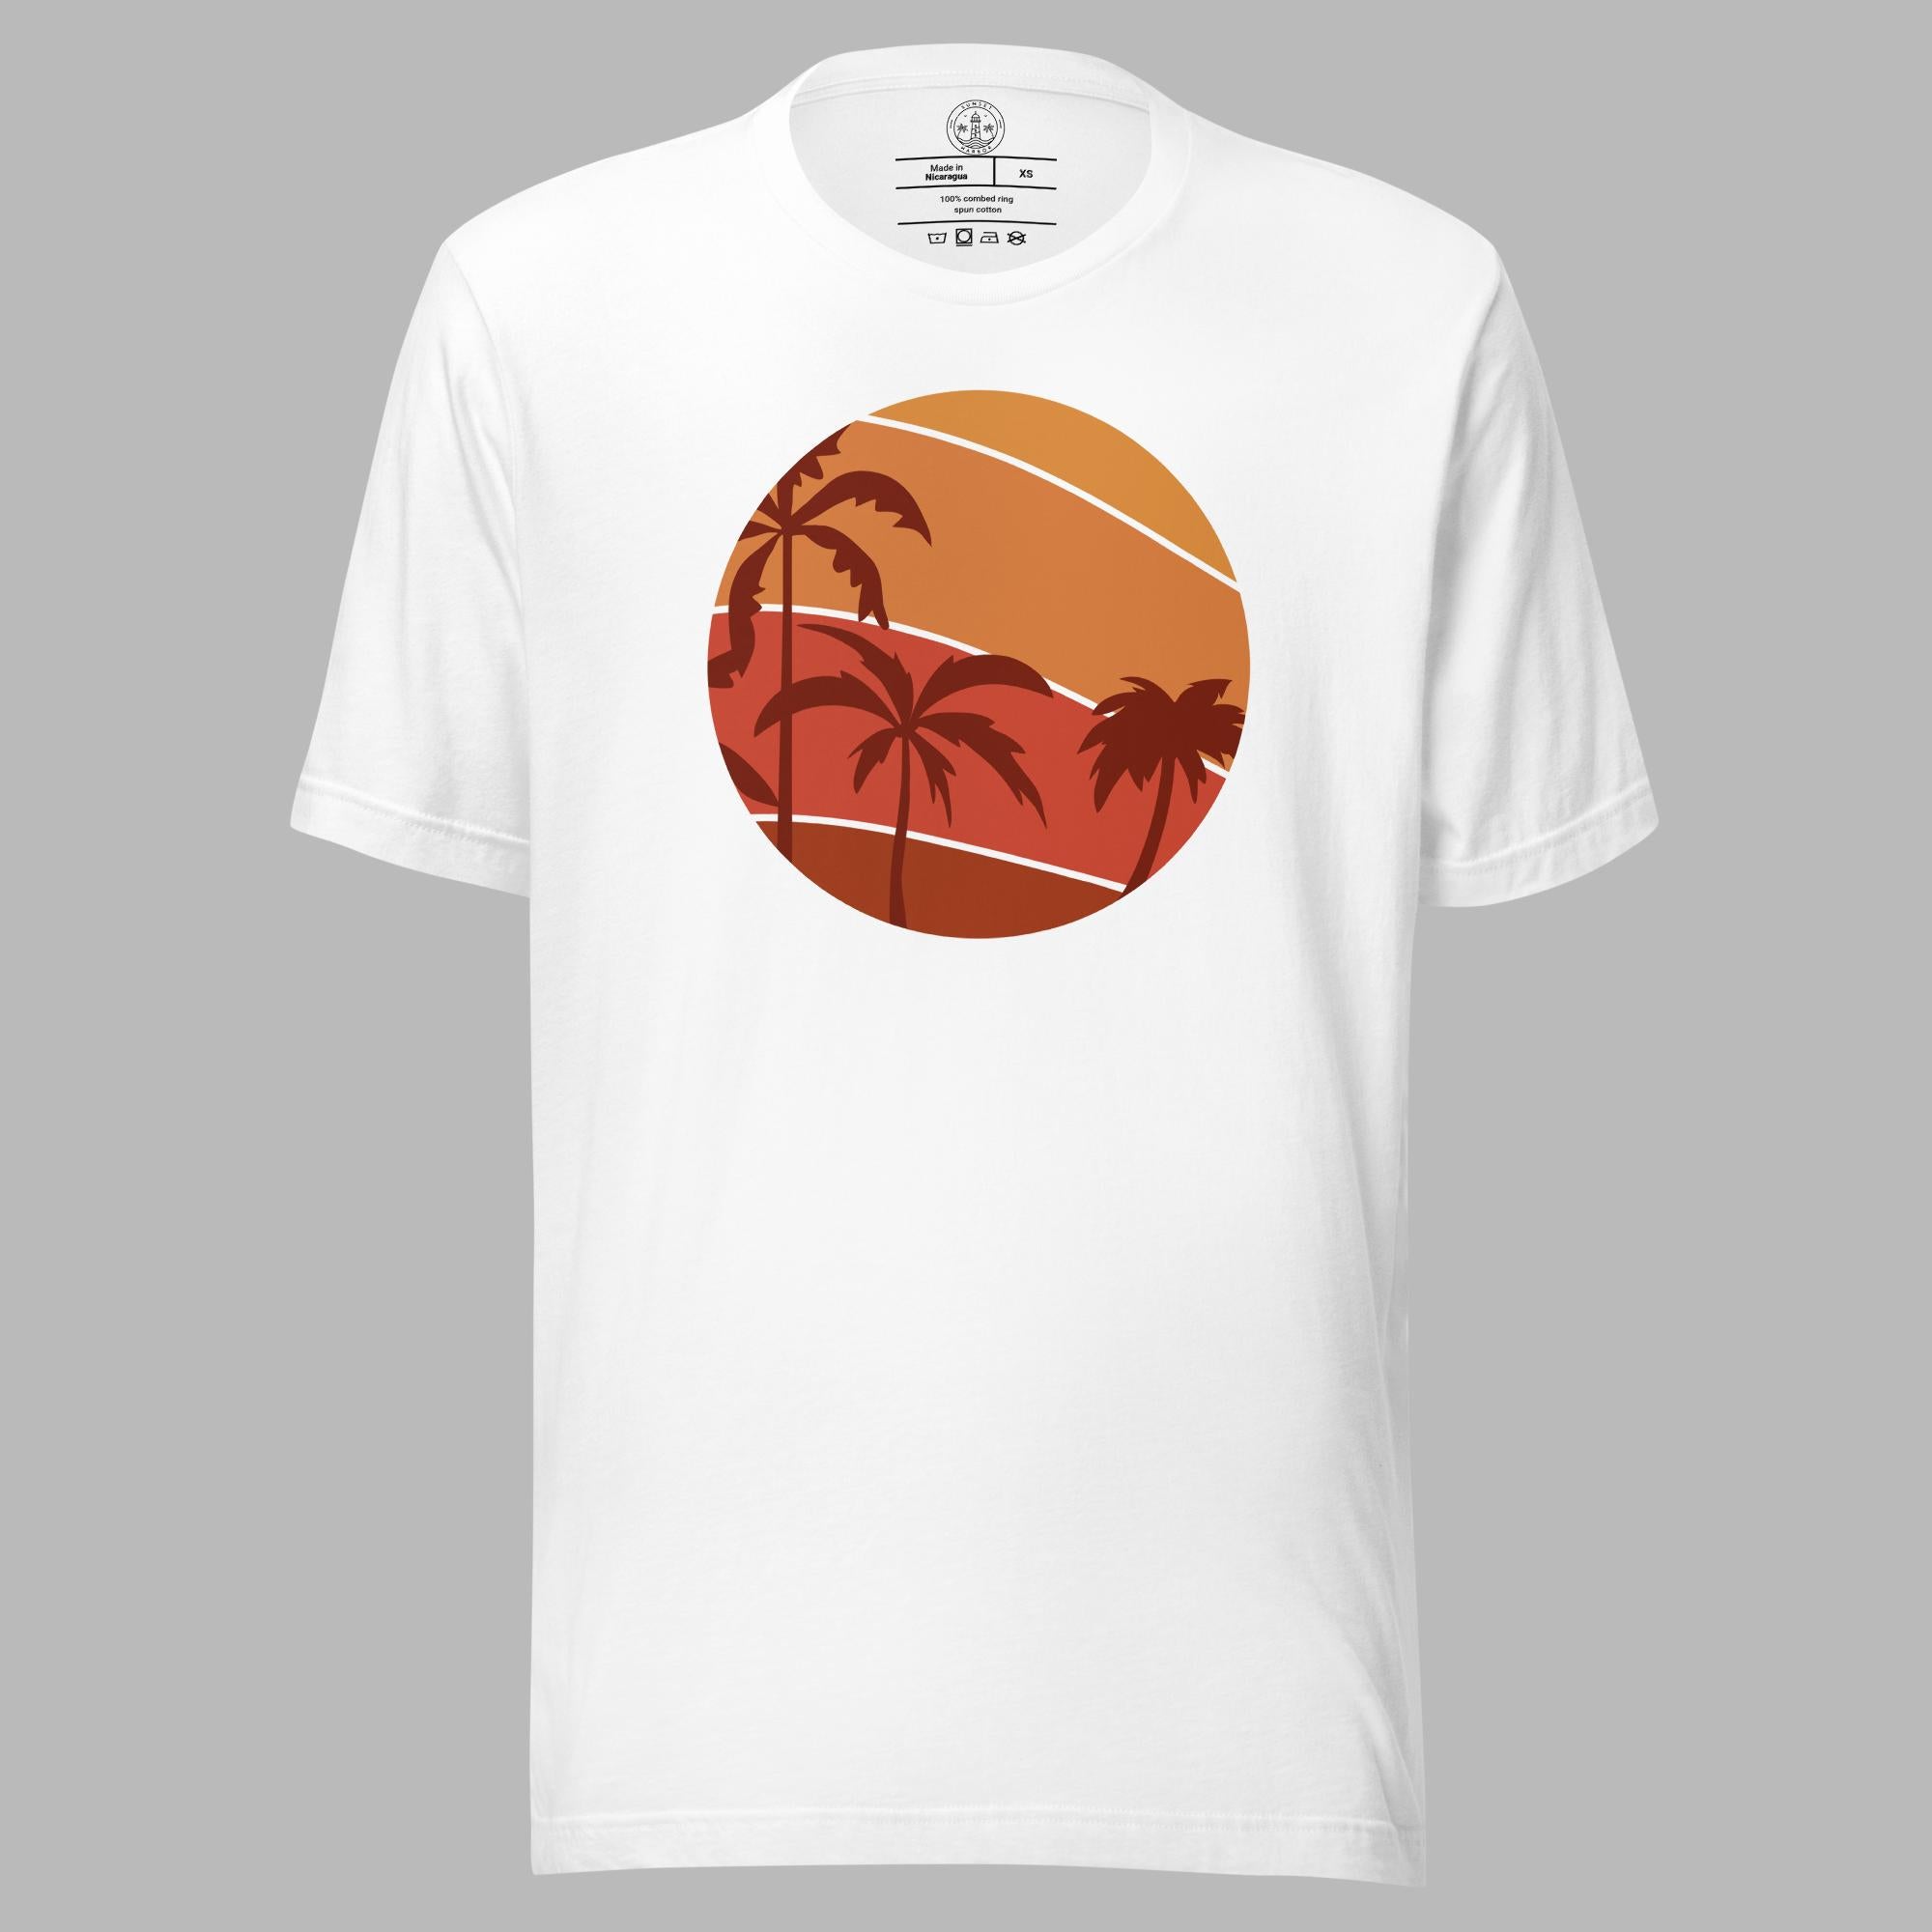 Unisex t-shirt - Palm Sunset - Sunset Harbor Clothing